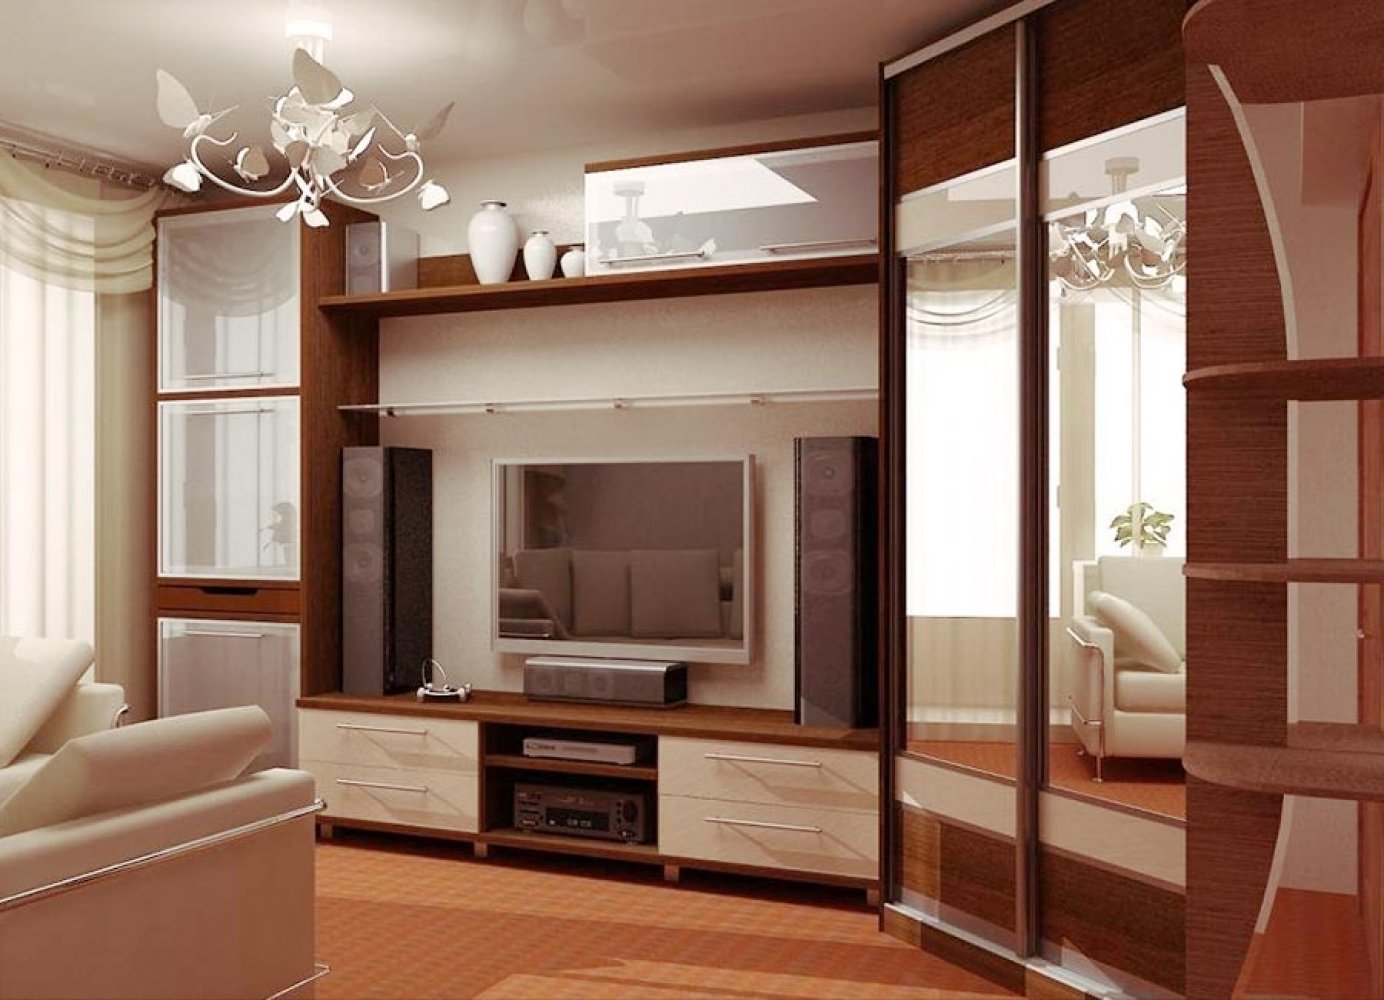 Большая гостиная 35 кв. м. и ее интерьер с примерами дизайна и расстановки мебели (45 фото)